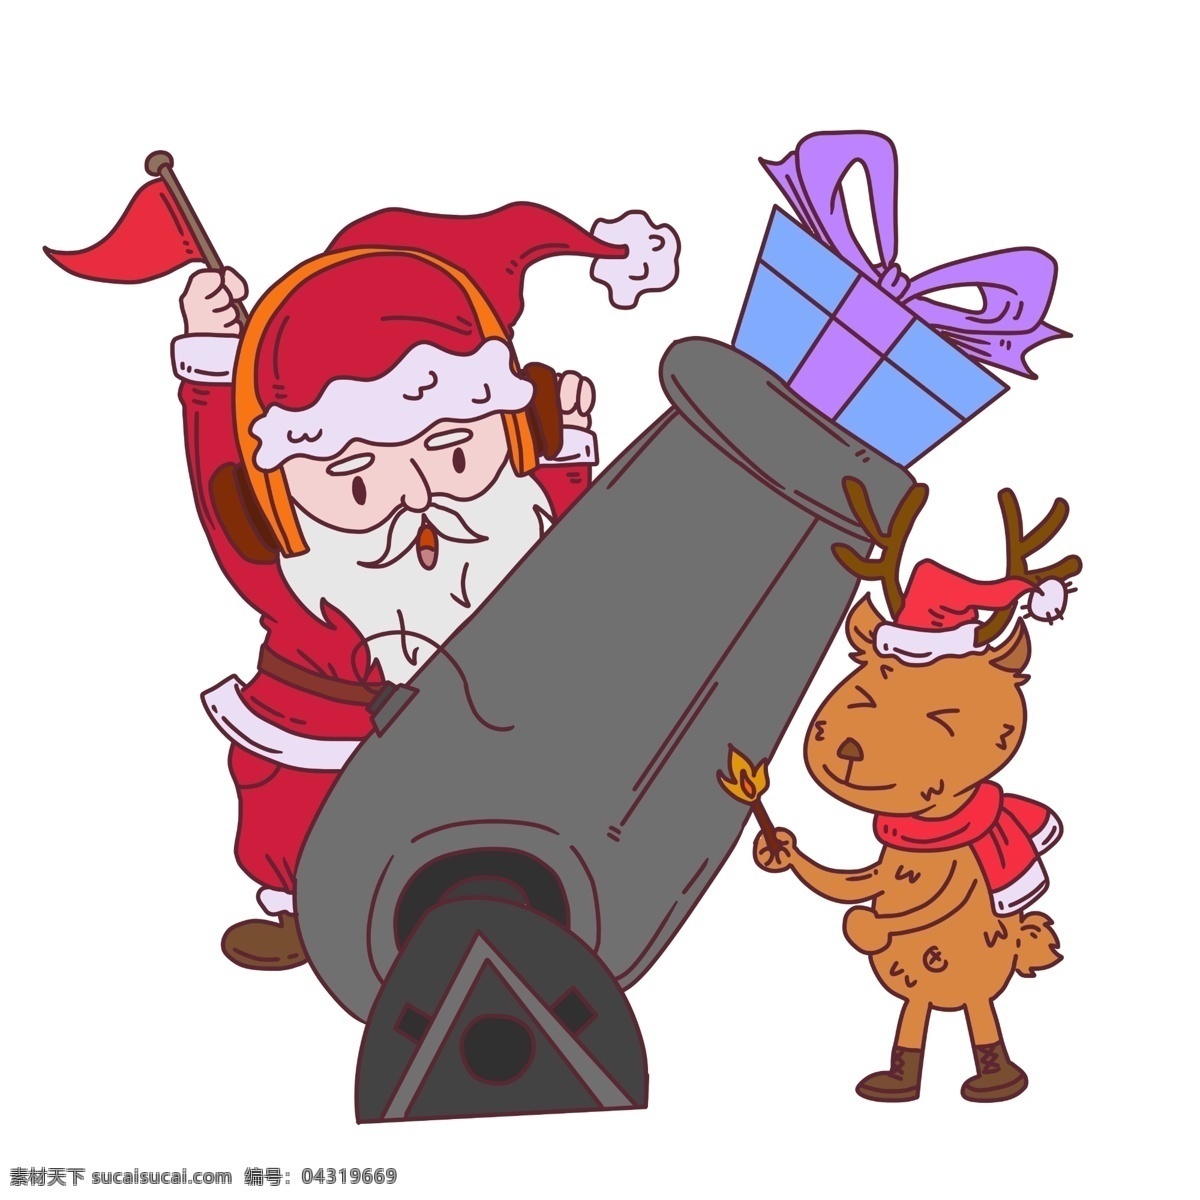 圣诞节 圣诞老人 麋鹿 礼物 炮 梅花鹿 圣诞帽子 礼物盒 圣诞礼物 圣诞节小鹿 手绘小鹿 圣诞人物插画